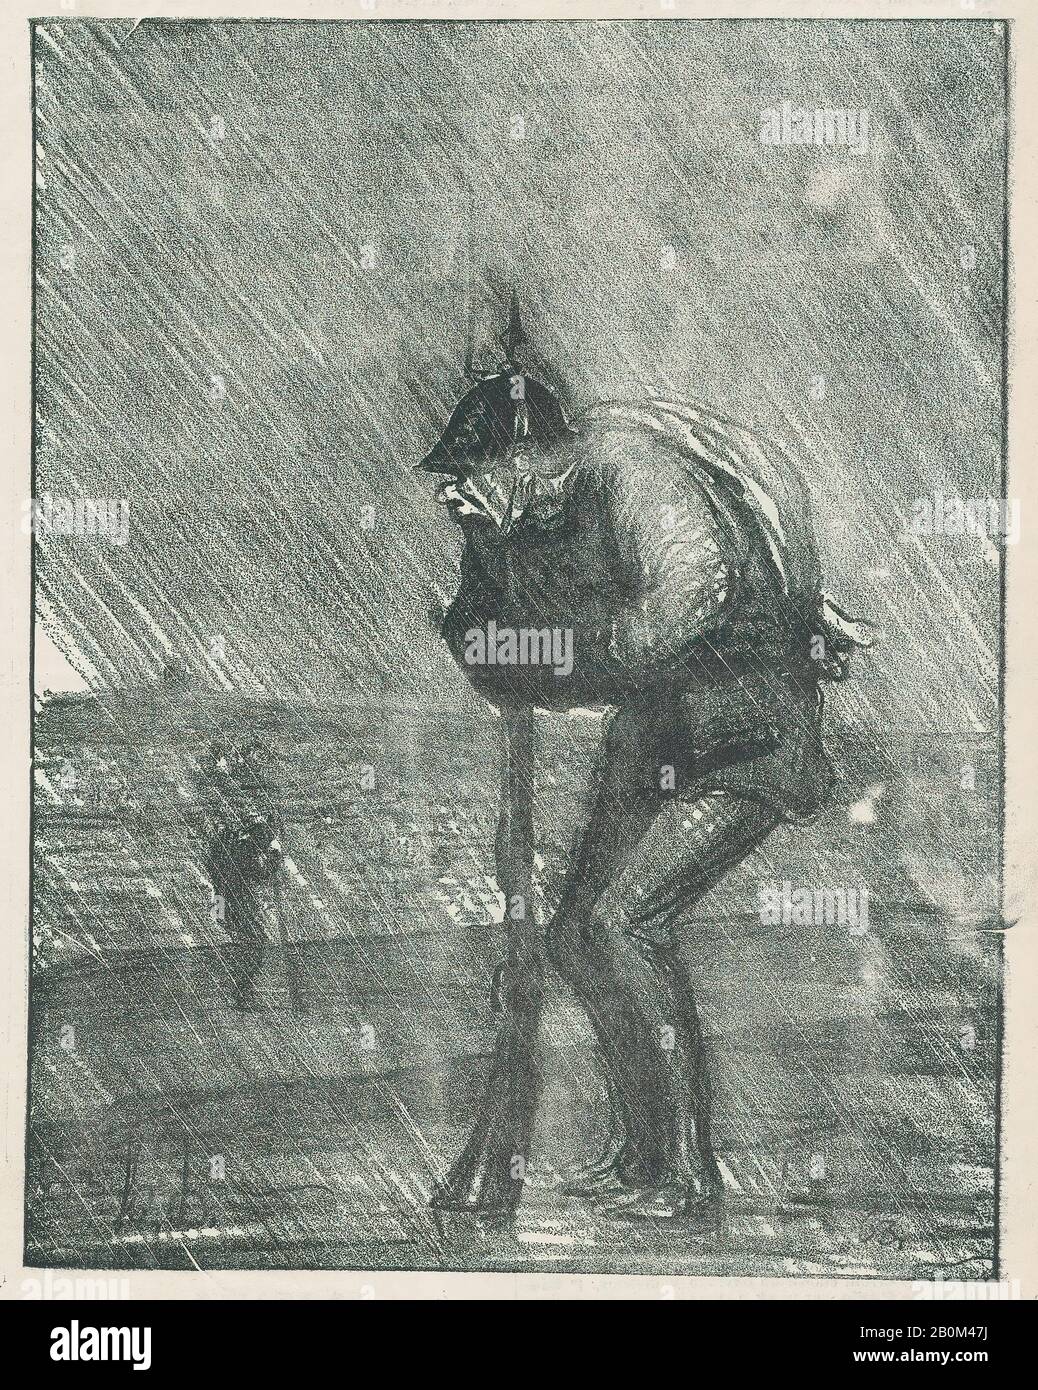 Honoré Daumier, Die Qualen von Tantalus, Wasser eingeschlossen, aus "News of the Day", veröffentlicht in Le Charivari, 23. November 1870, "News of the Day" (Actualités), Honoré Daumier (Französisch, Marseille, 1808-1879 Valmondois), 23. November 1870, Lithograph on newsprint; zweiter Bundesstaat Delteil vom × 8. (22,5 × 17,4 cm), Blatt: 11 7/8 × 8 1/4 Zoll (30,2 × 20,9 cm), Ausdrucke Stockfoto